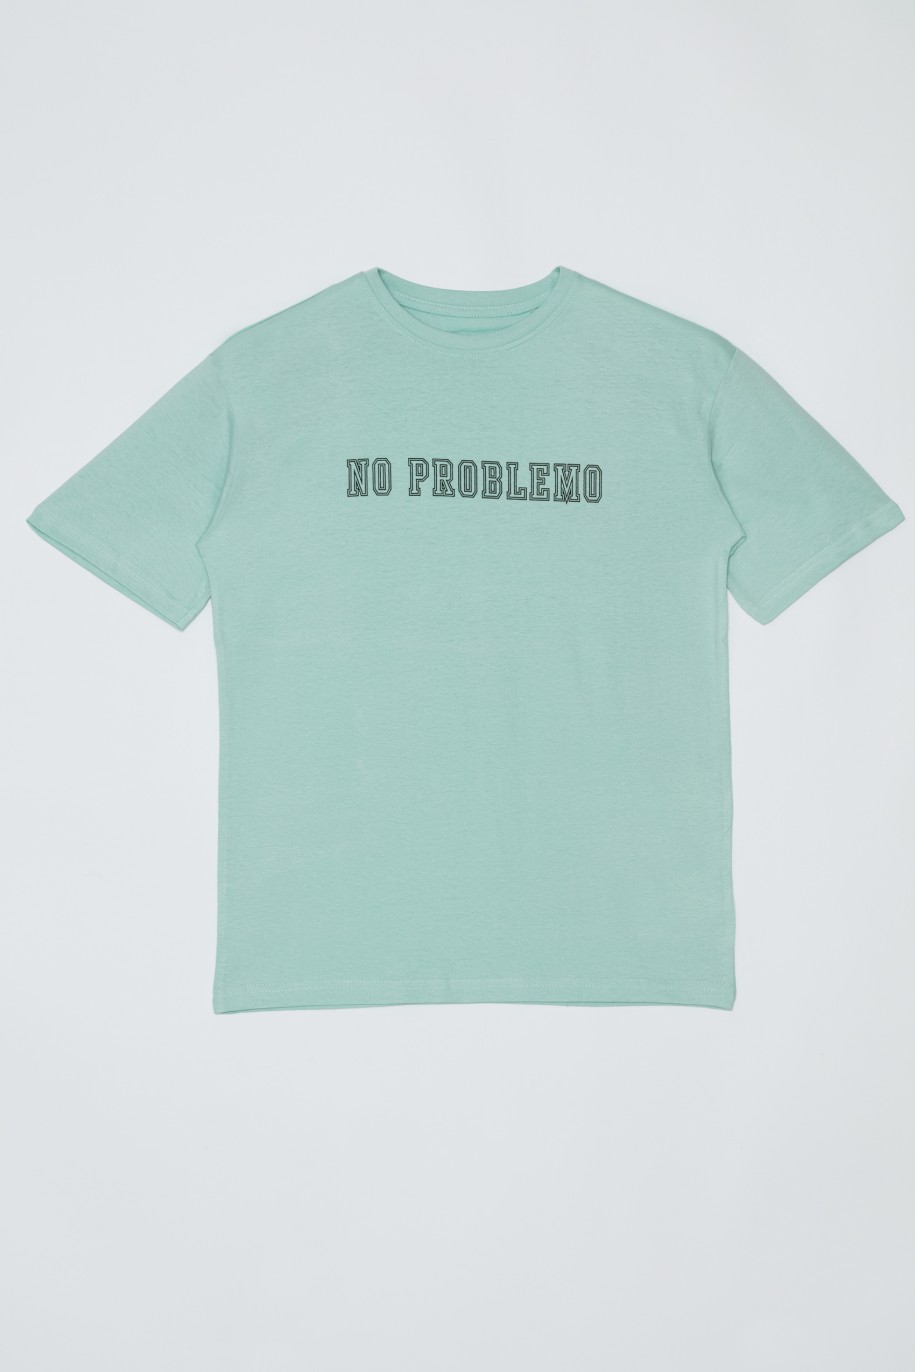 Miętowy t-shirt dla chłopaka NO PROBLEMO - 33064